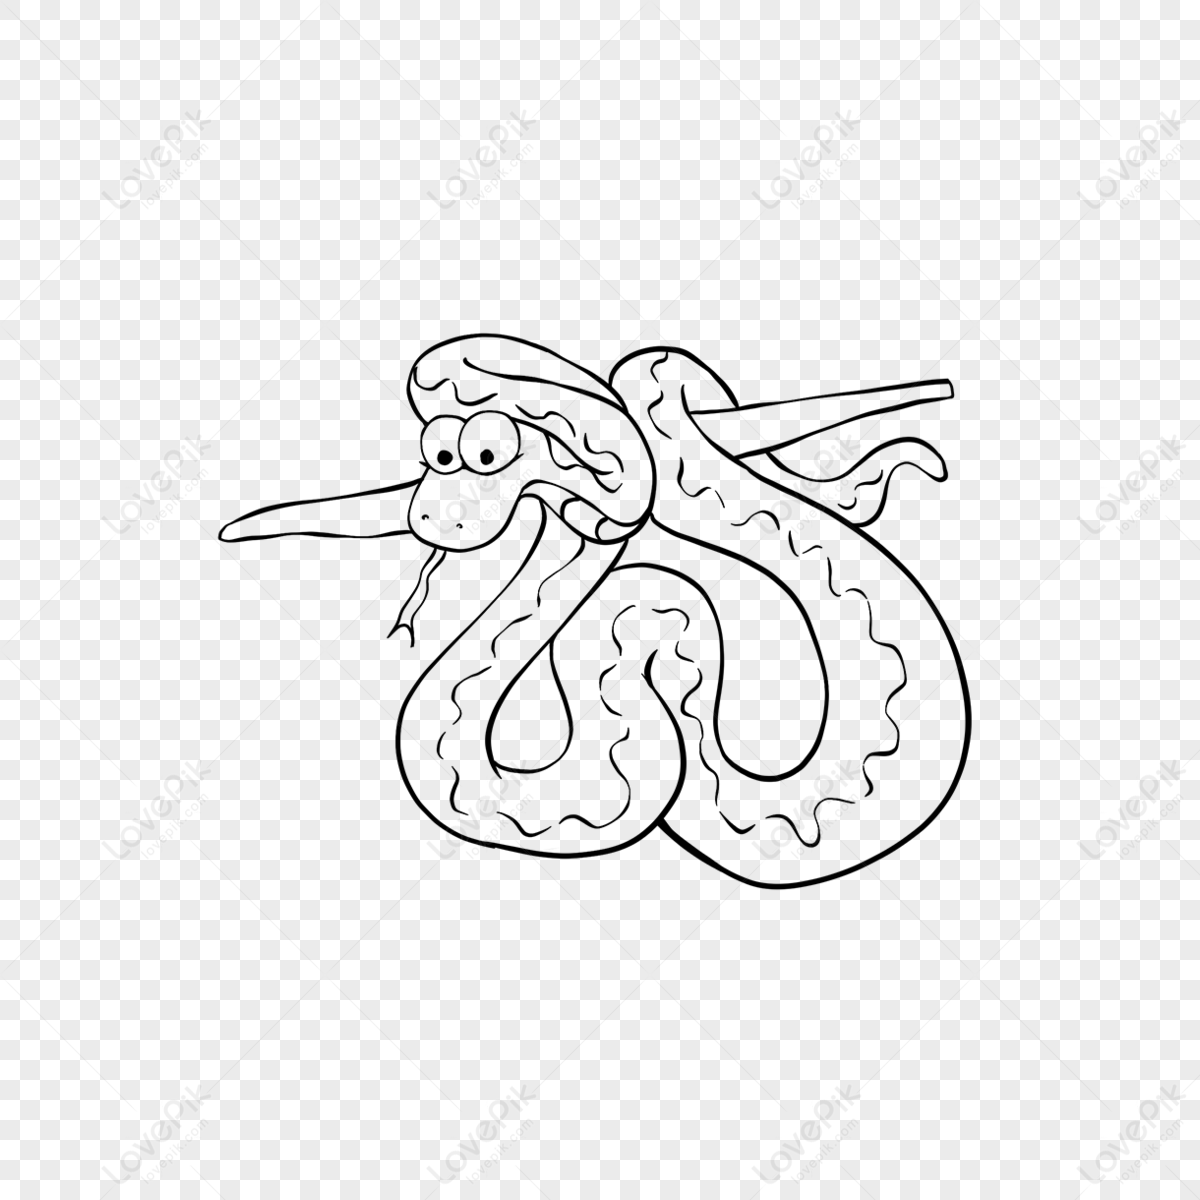 蛇的动画片黑白例证 库存例证. 插画 包括有 图画, 简单, 舌头, 草图, 向量, 乱画, 逗人喜爱 - 114307775